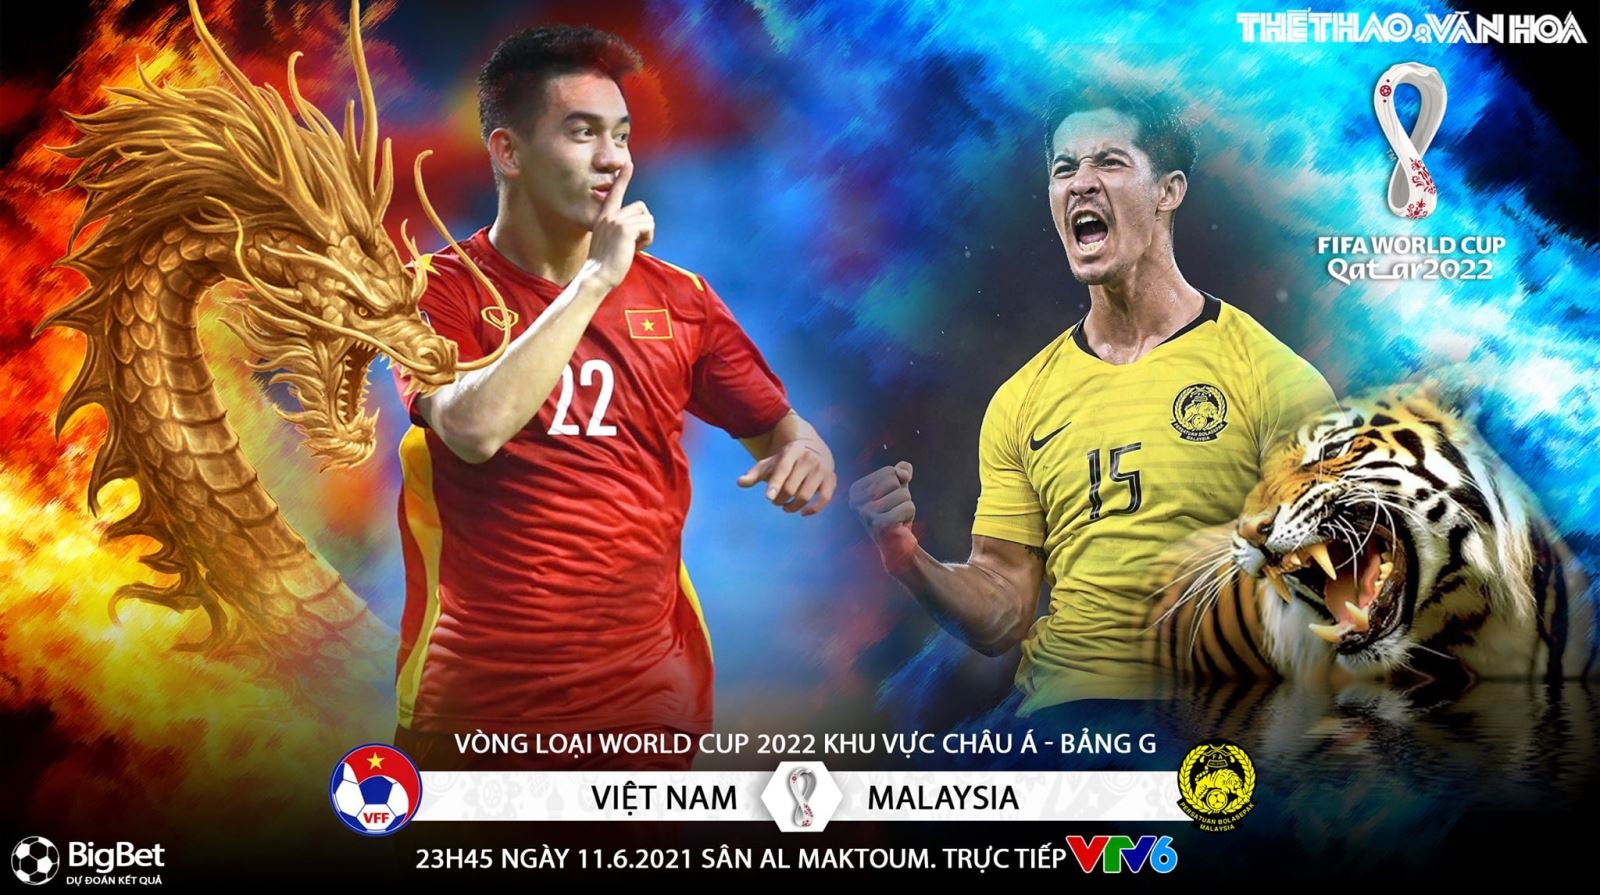 Bóng đá, Việt Nam, Malaysia Hình ảnh liên quan đến trận đấu giữa tuyển Việt Nam và Malaysia sẽ khiến bạn thích thú với bóng đá. Cùng ngắm nhìn các cầu thủ chơi đầy sức mạnh và tinh thần đấu tranh quyết liệt trên sân cỏ. Đó là một trận đấu đáng xem và để lại được nhiều kỷ niệm khó quên đối với người hâm mộ bóng đá.